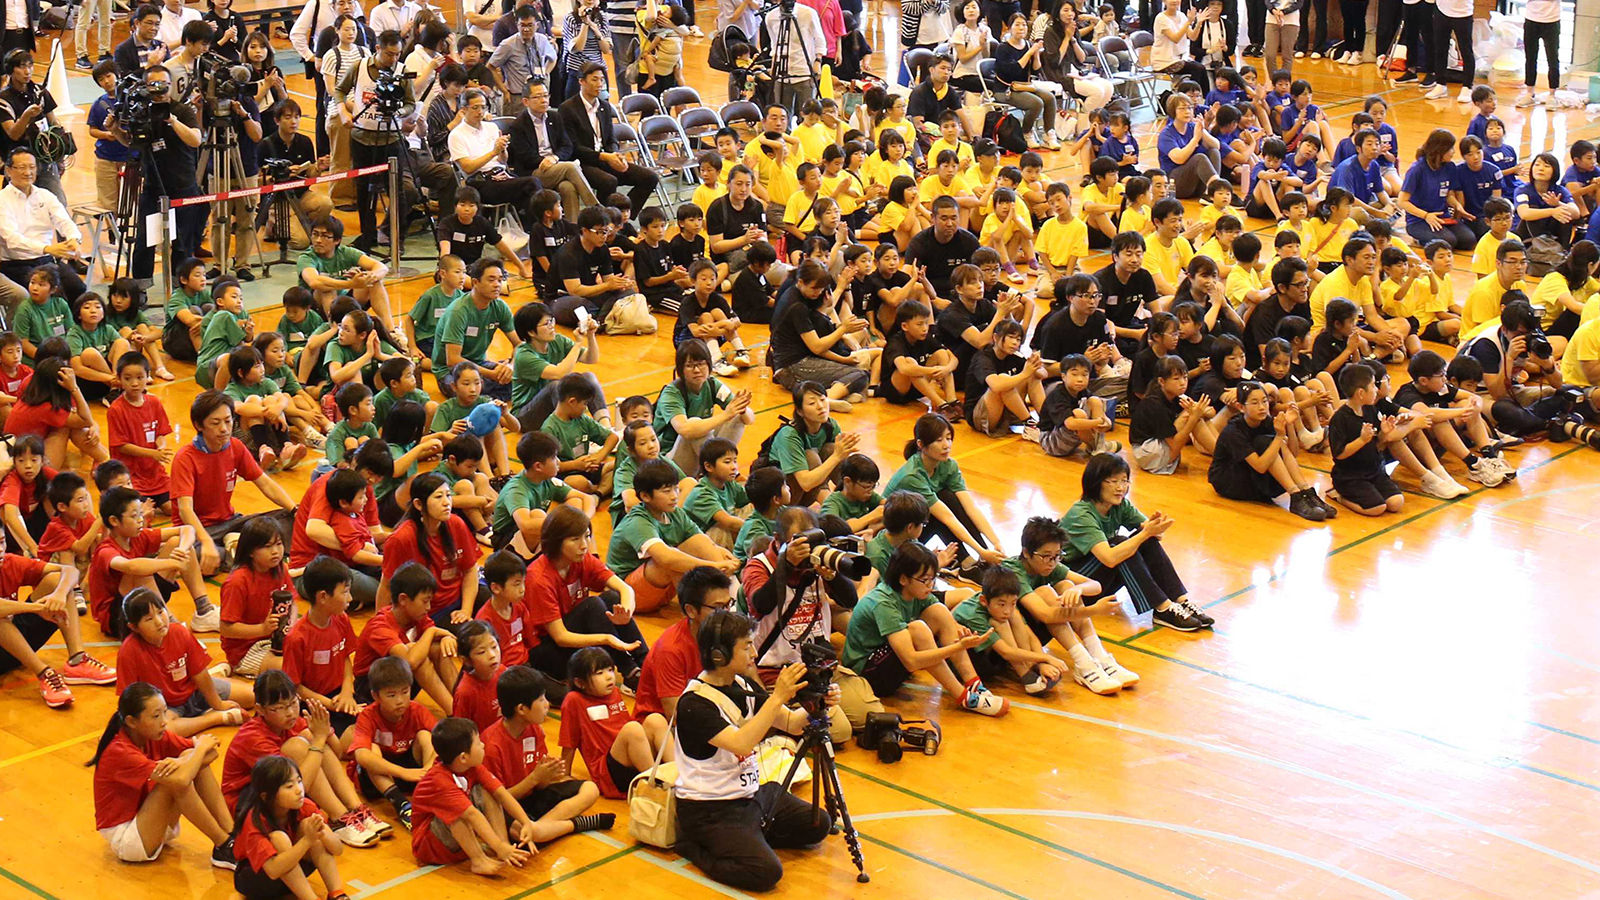 真夏日の熊本に集まった約1,700名の参加者と13名のアスリート